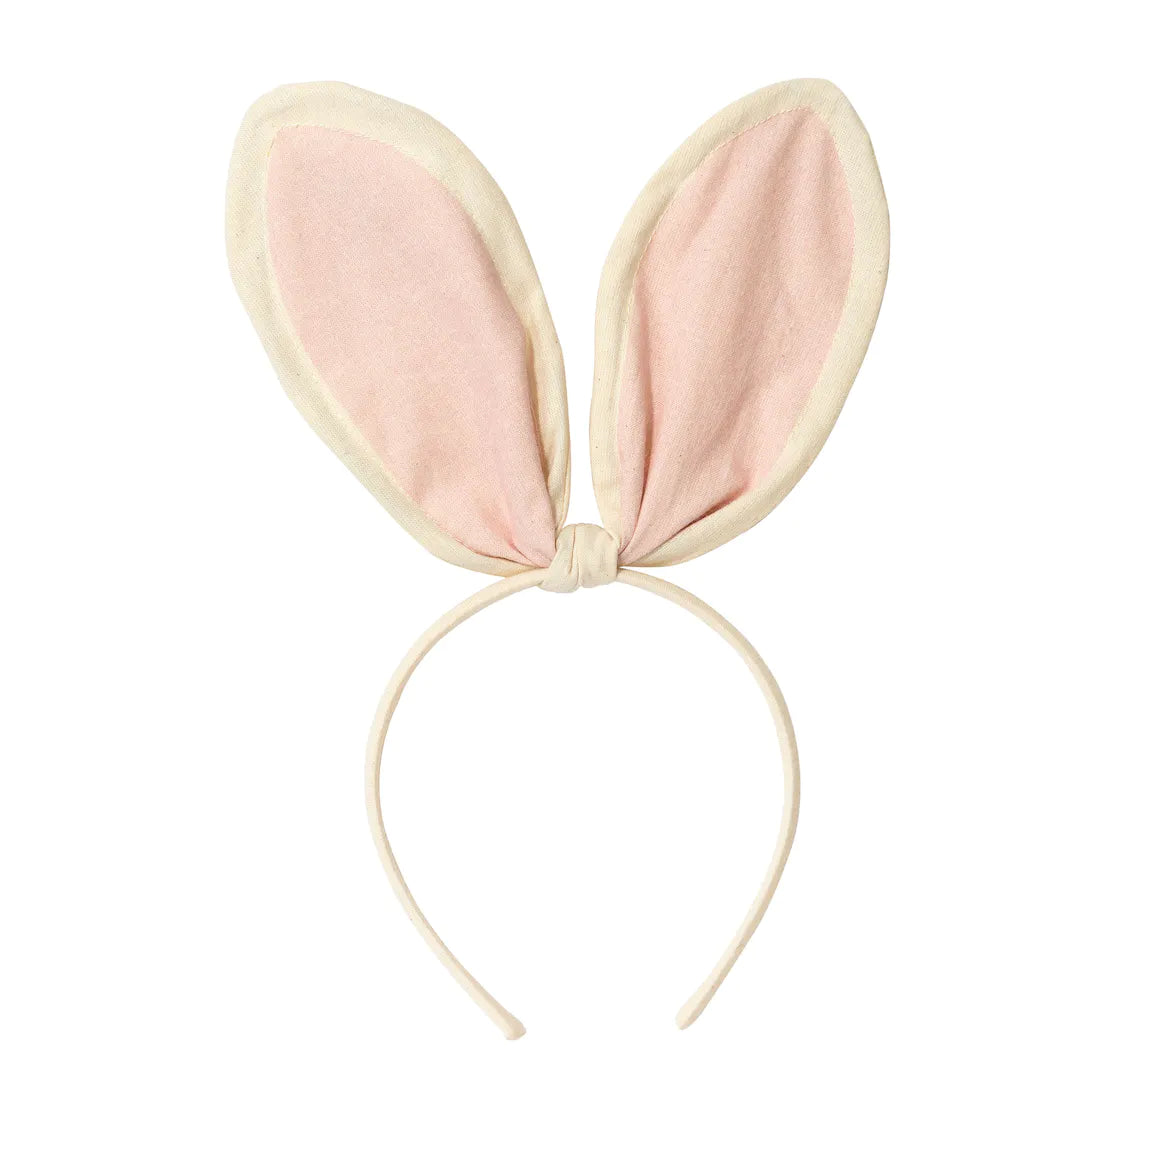 Bunny Ears Headband By Talking Tables